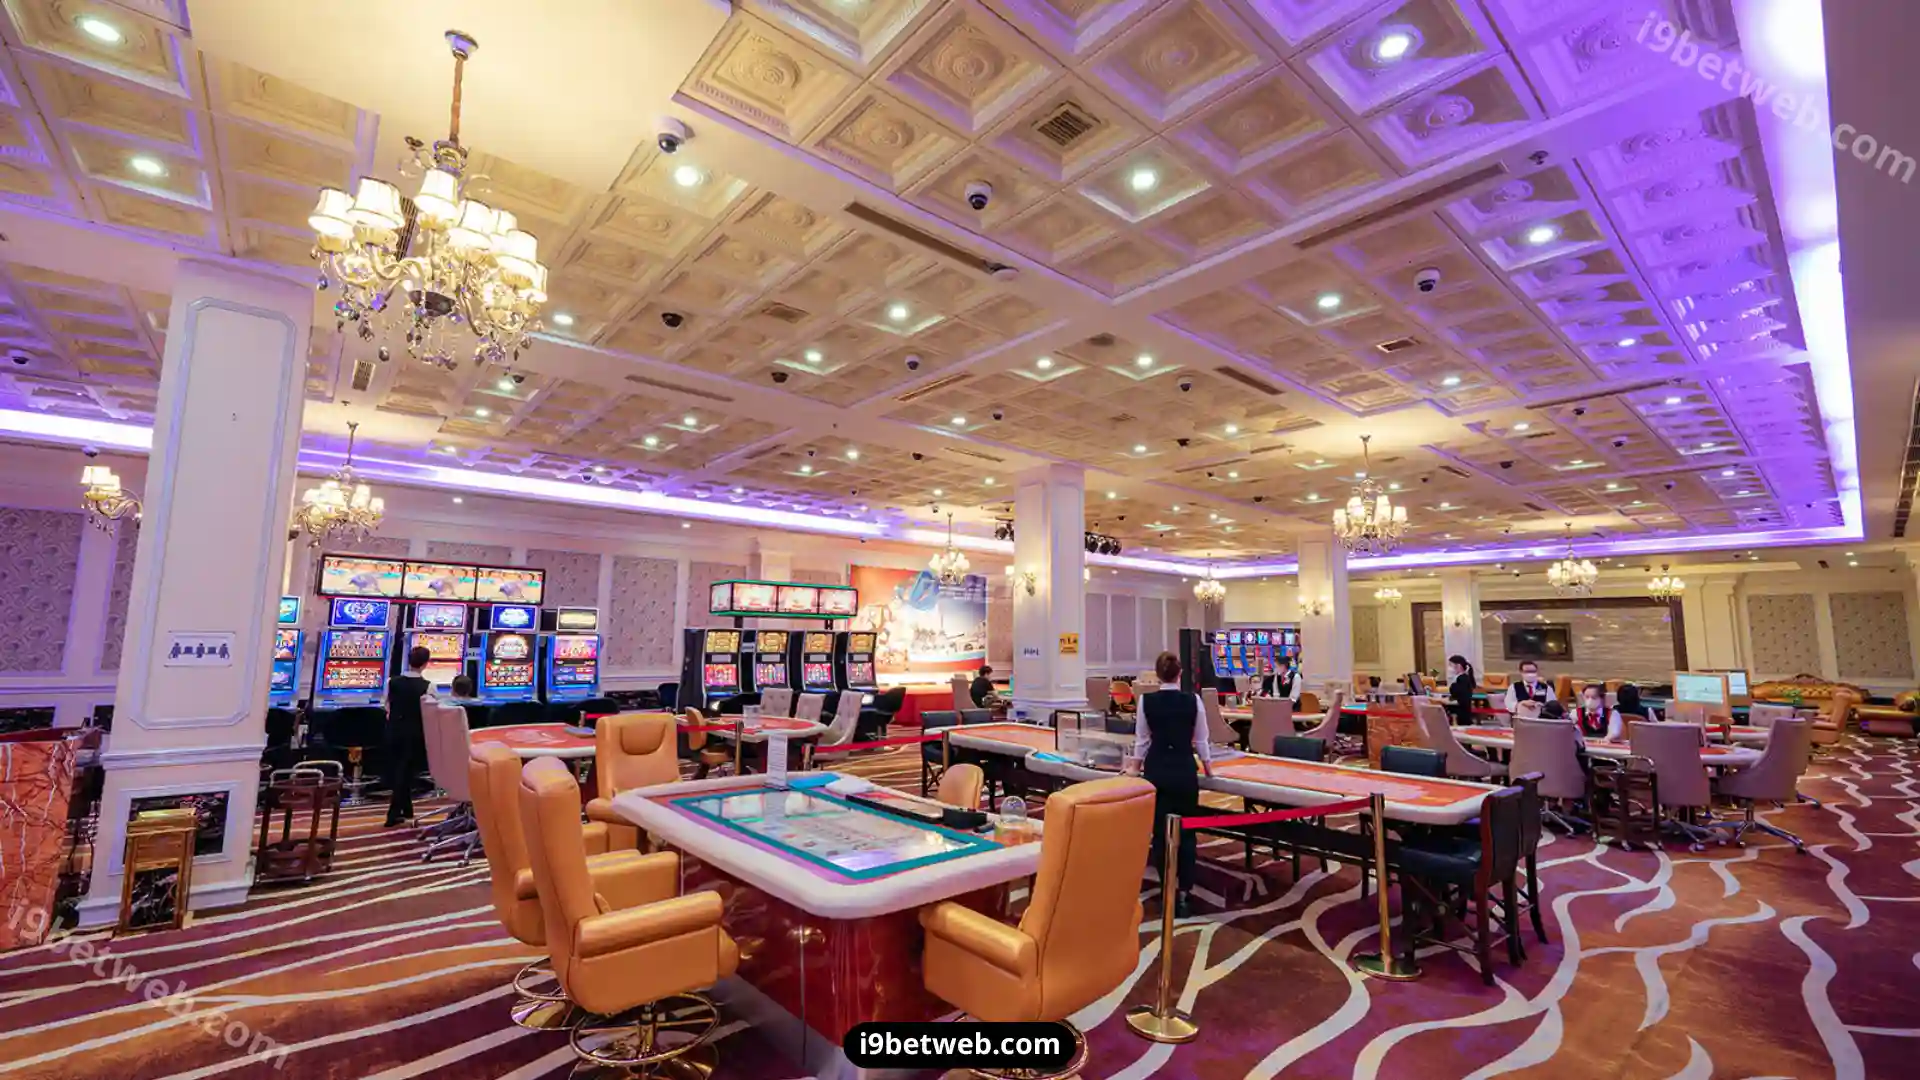 Hình ảnh bên trong top casino lớn nhất Việt Nam Royal International Gaming Club